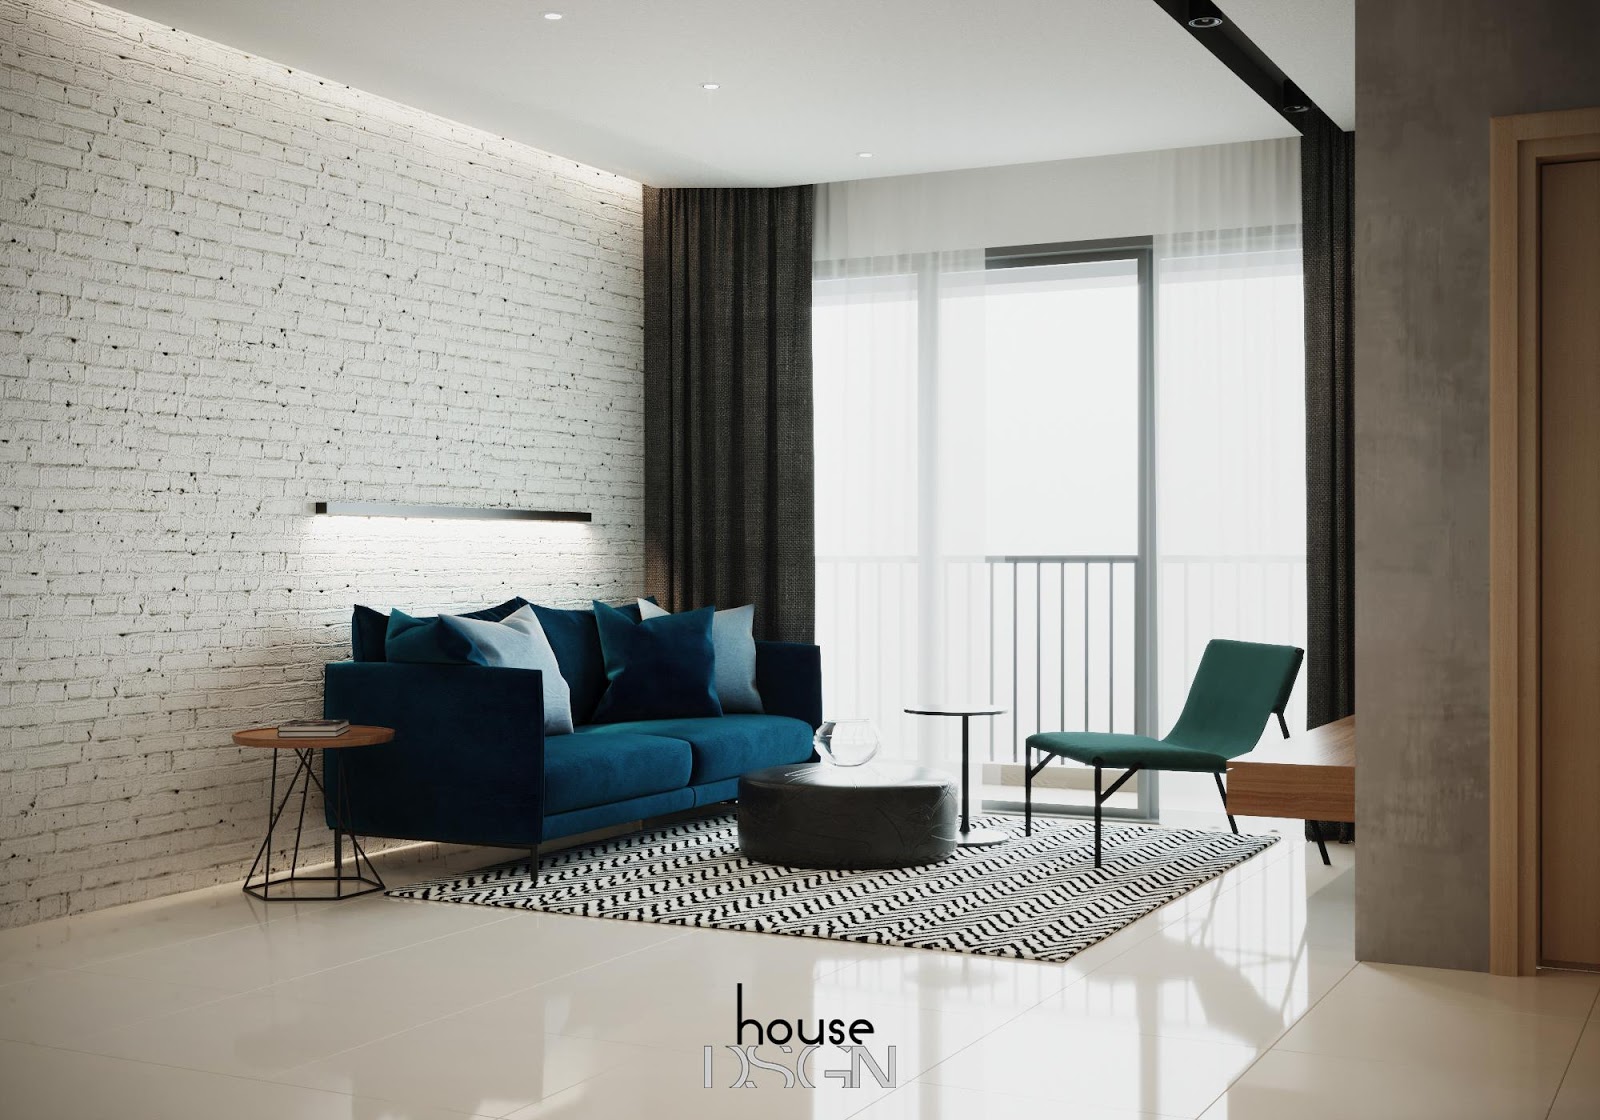 thiết kế phòng khách nhỏ - Housedesign